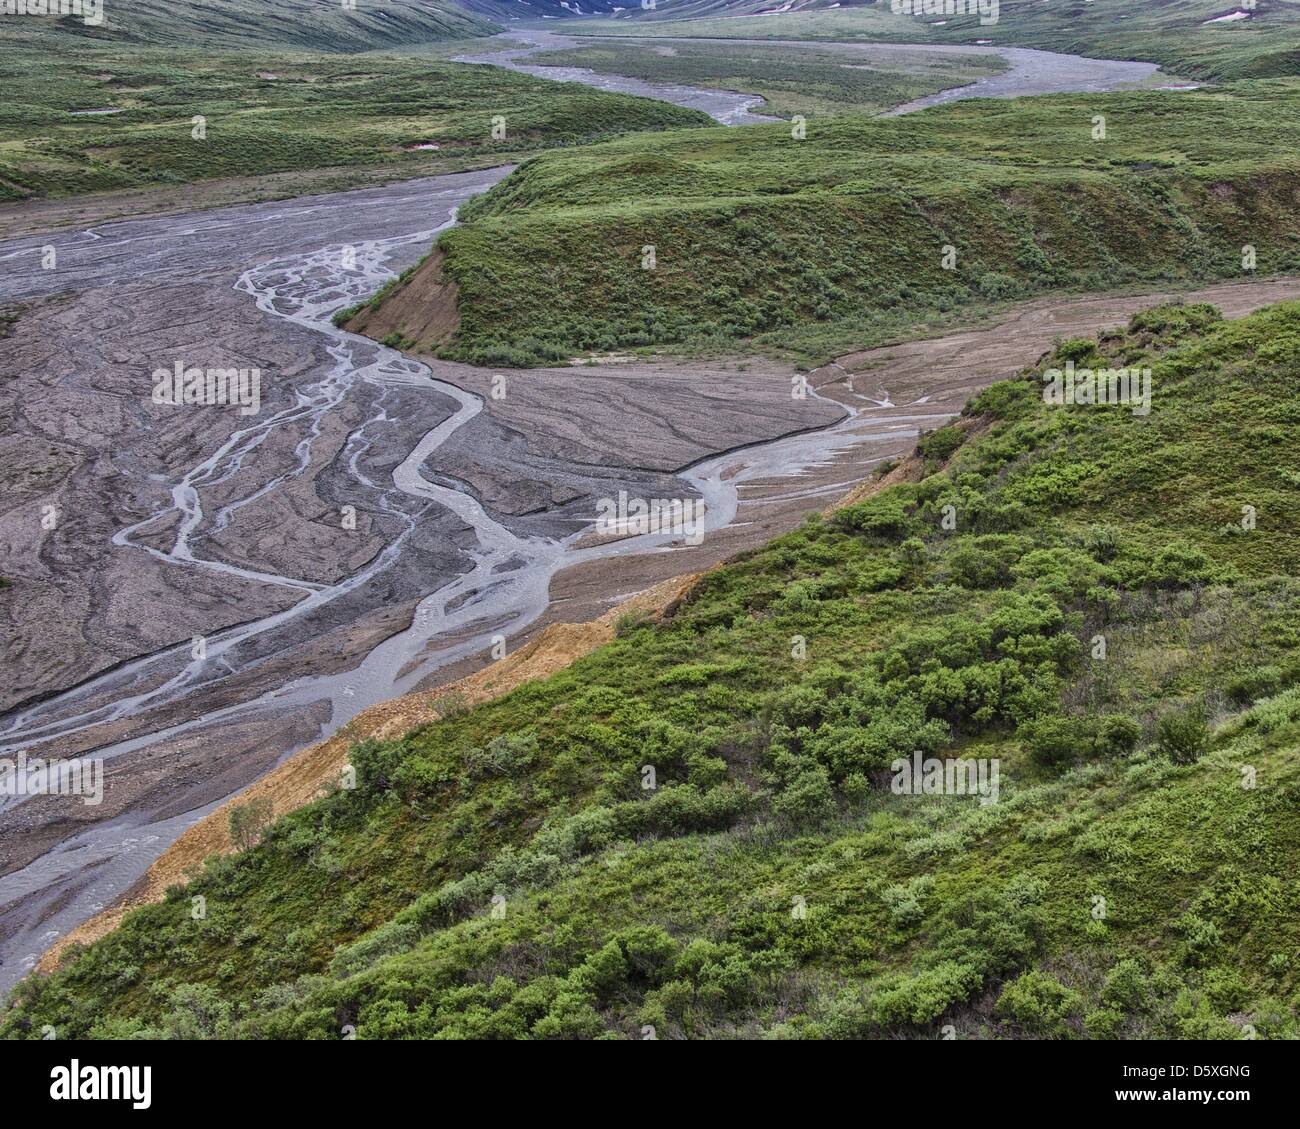 Junio 27, 2012 - Denali Boroigh, Alaska, EE.UU. - El glacial del valle tallado Toklat trenzada, uno de los ríos que atraviesan la tundra de los 6 millones de acres (24,500åÊkm) El Parque Nacional Denali y preservar. Cargados con residuos de rocas glaciales y el escurrimiento de la nieve que se derrite, modifican y entrelazan sus canales a través de los valles y radicalmente la influencia de la topografía. (Crédito de la Imagen: © Arnold Drapkin/ZUMAPRESS.com) Foto de stock